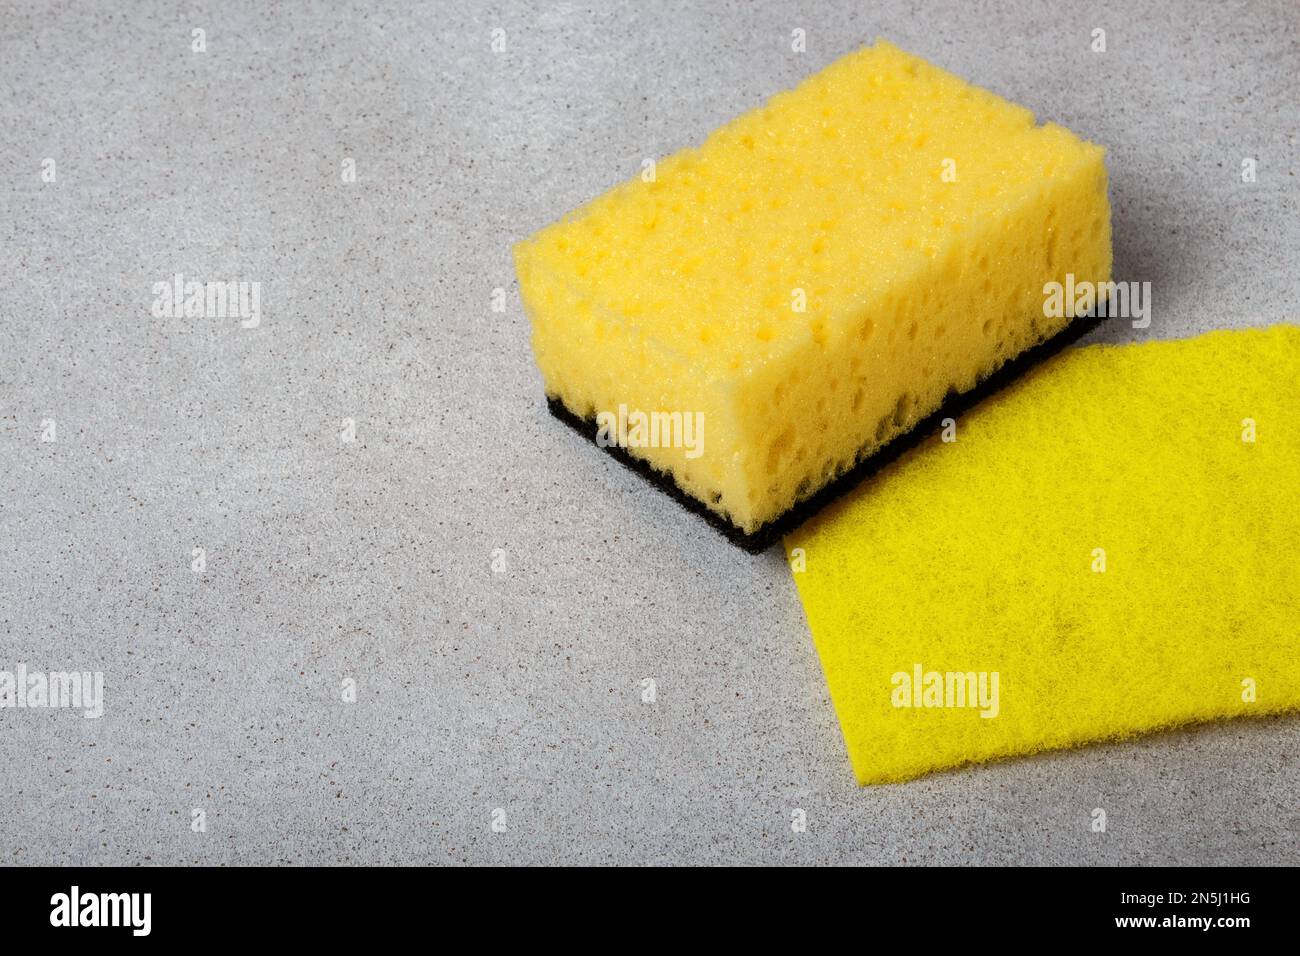 https://c8.alamy.com/compes/2n5j1hg/tipos-de-esponja-amarilla-para-lavar-platos-y-servilleta-sobre-fondo-gris-el-tema-del-lavado-de-platos-adecuado-limpieza-de-la-casa-2n5j1hg.jpg